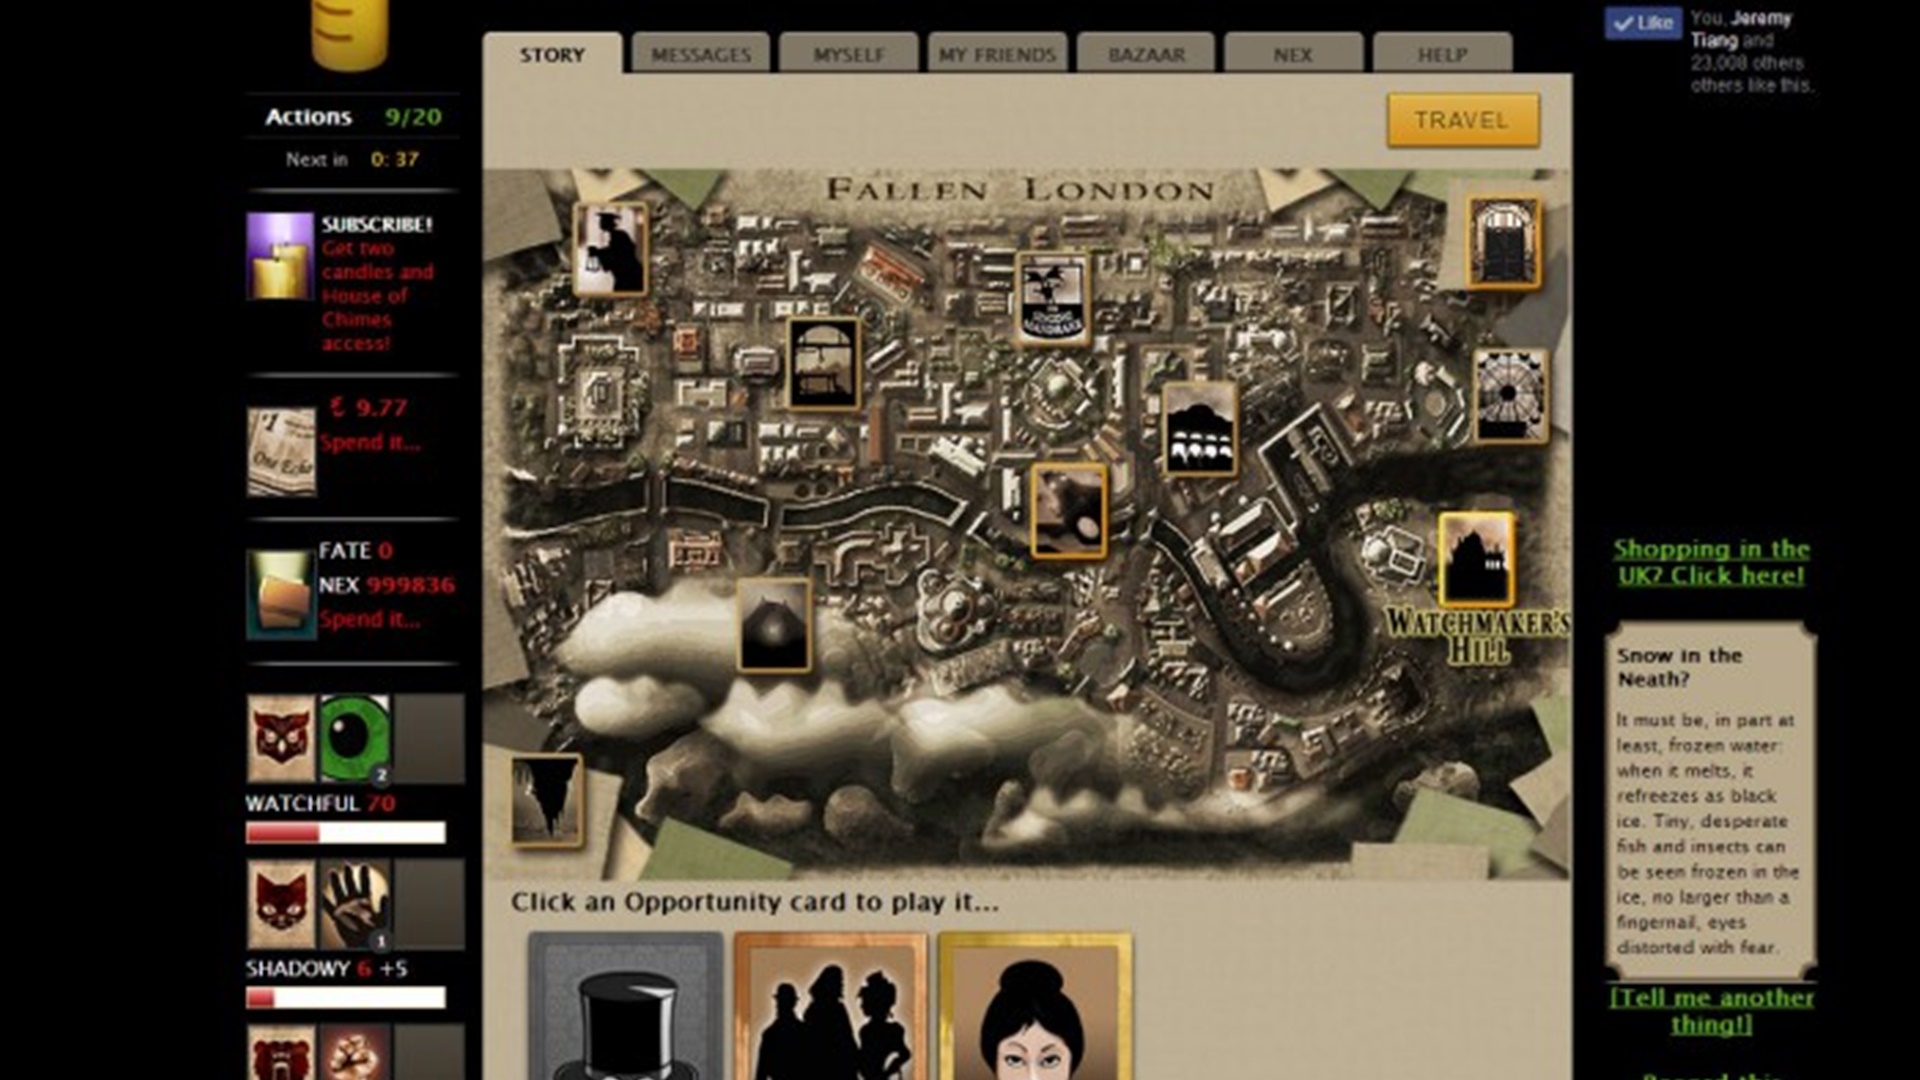 משחקים מקוונים: נפל לונדון. התמונה מציגה מפה של לונדון עם אפשרויות שונות העומדות לרשות הנגן סביב המסך